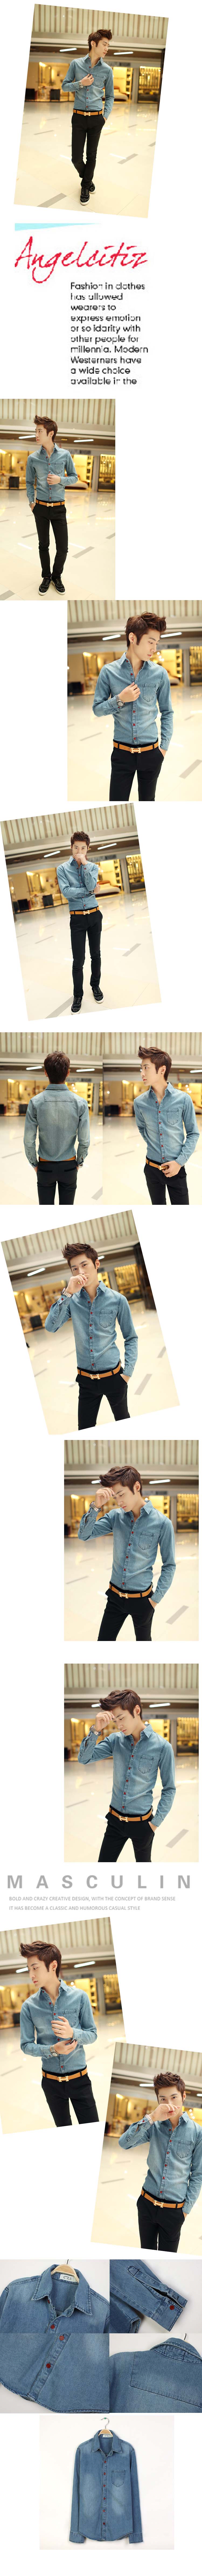 jual kemeja jeans pria model terbaru dengan bahan berkualitas import trending fashion ala korea